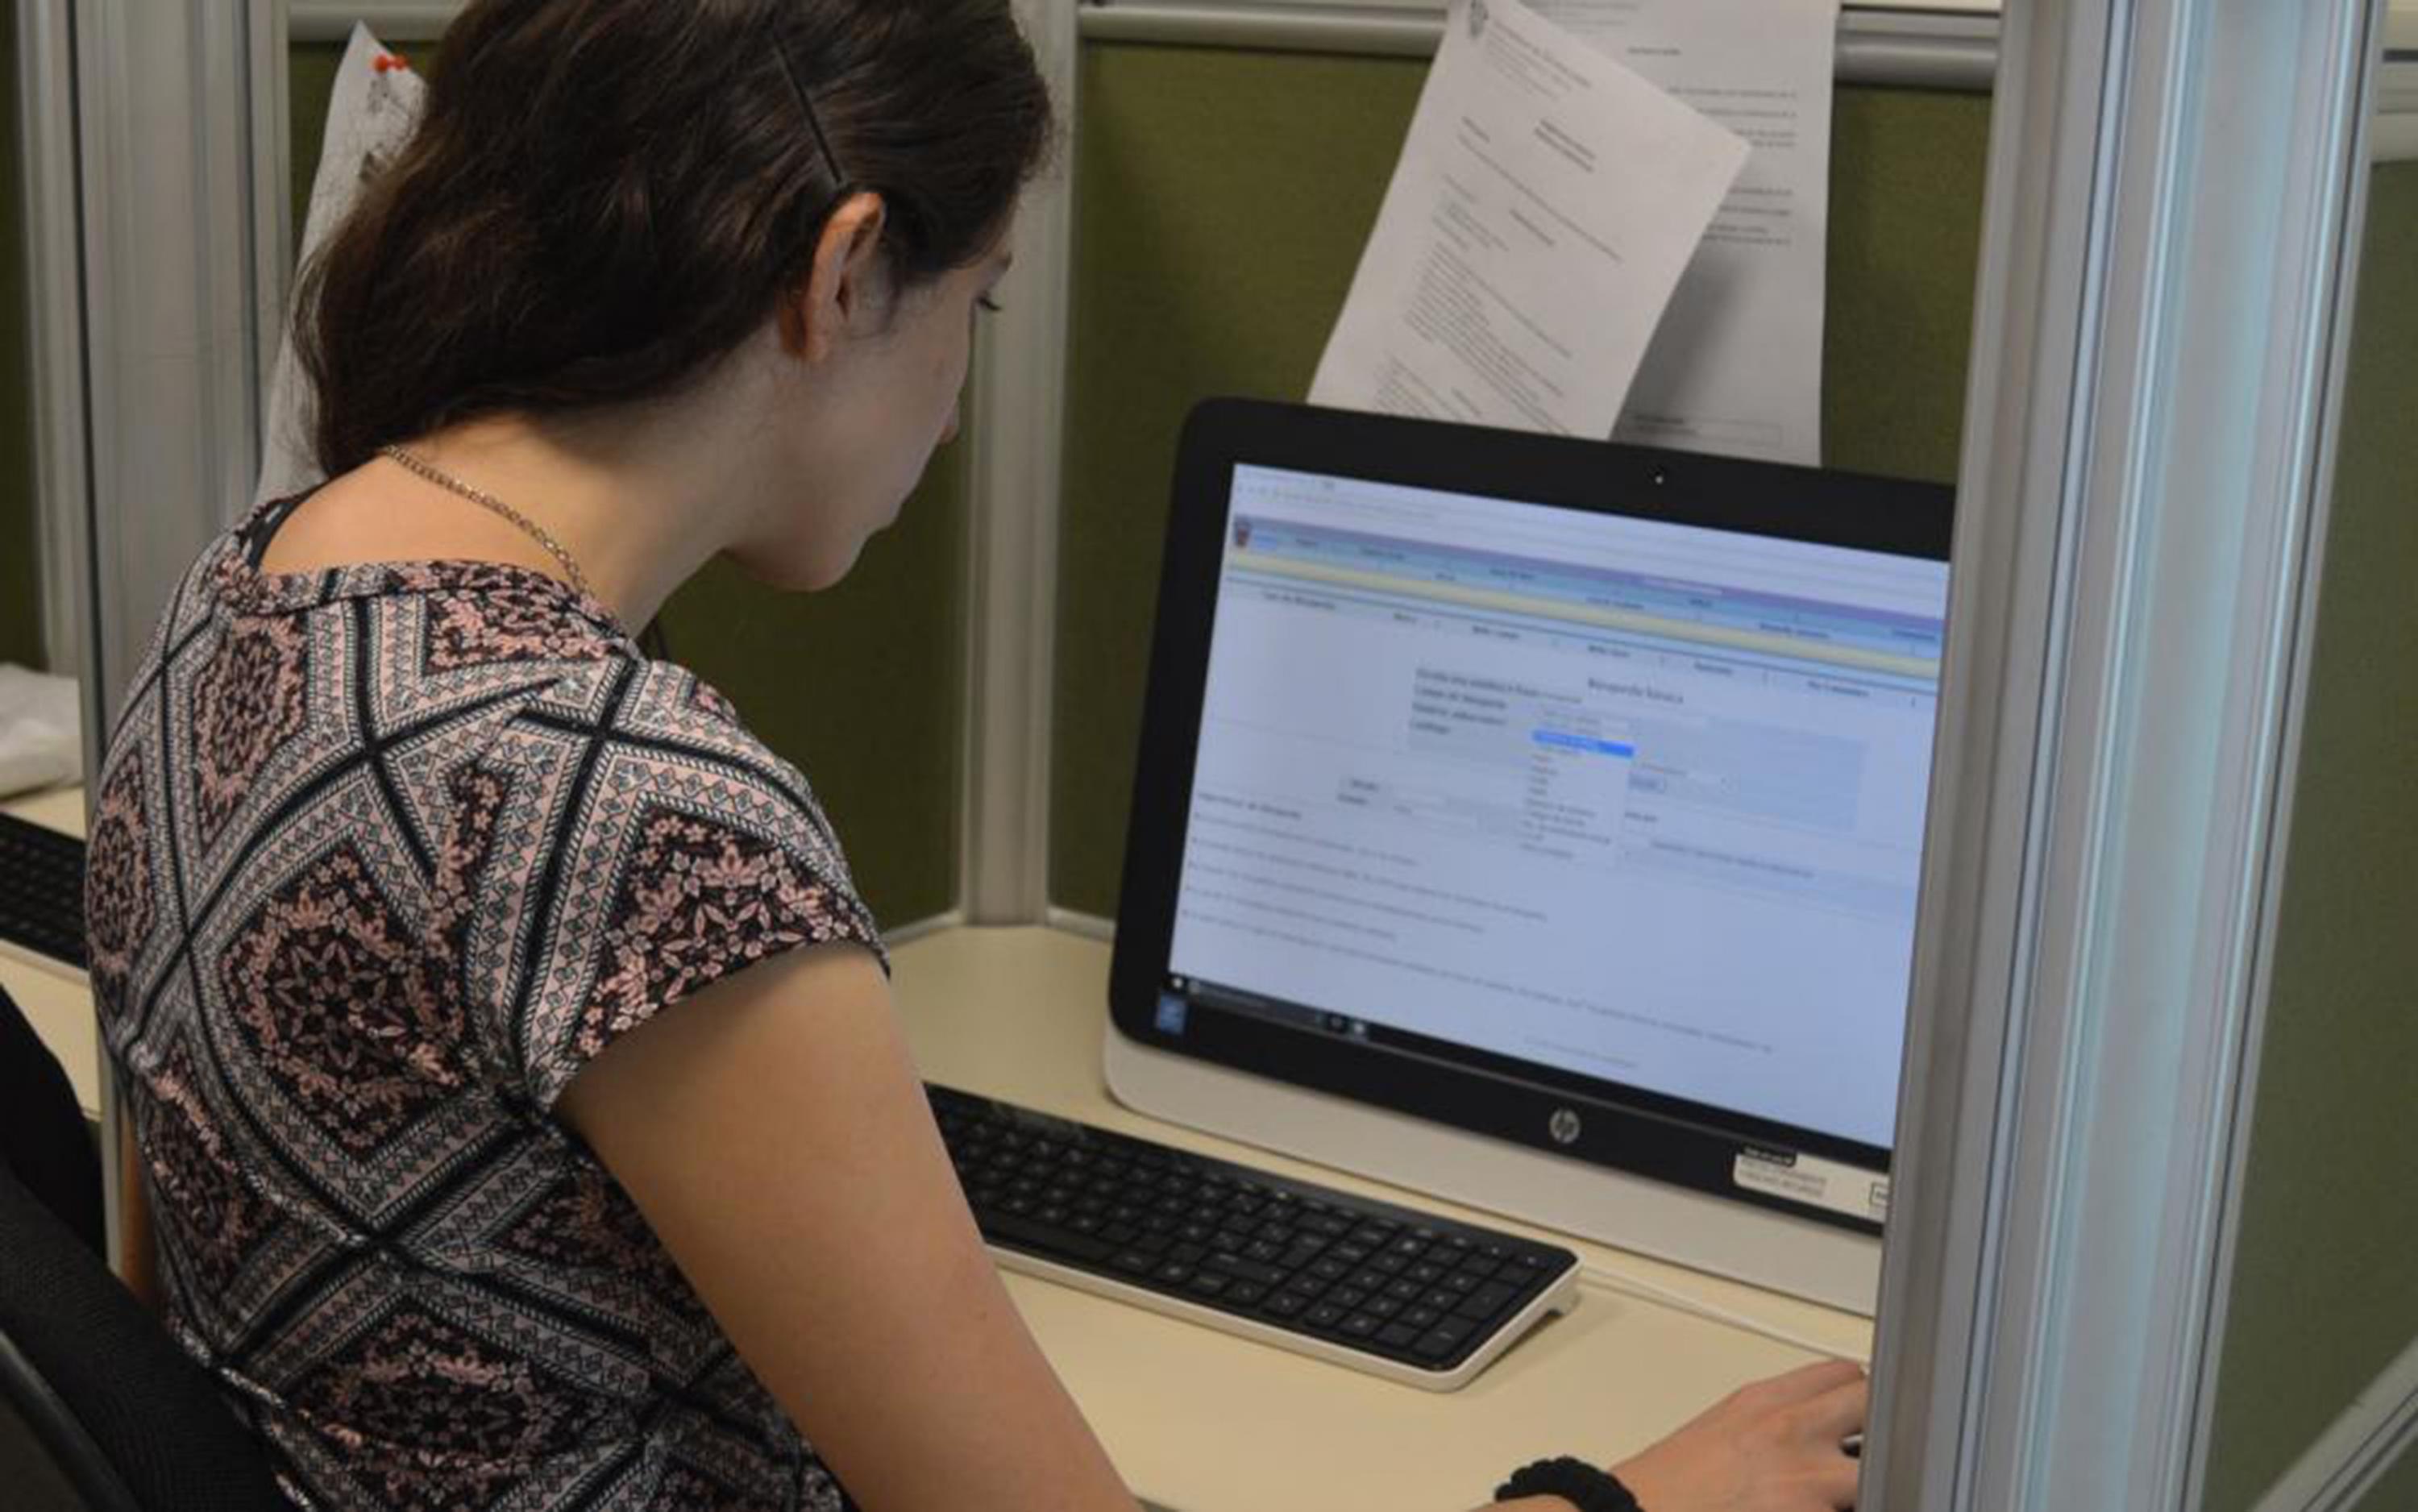 Persona realizando una búsqueda de información en la computadora